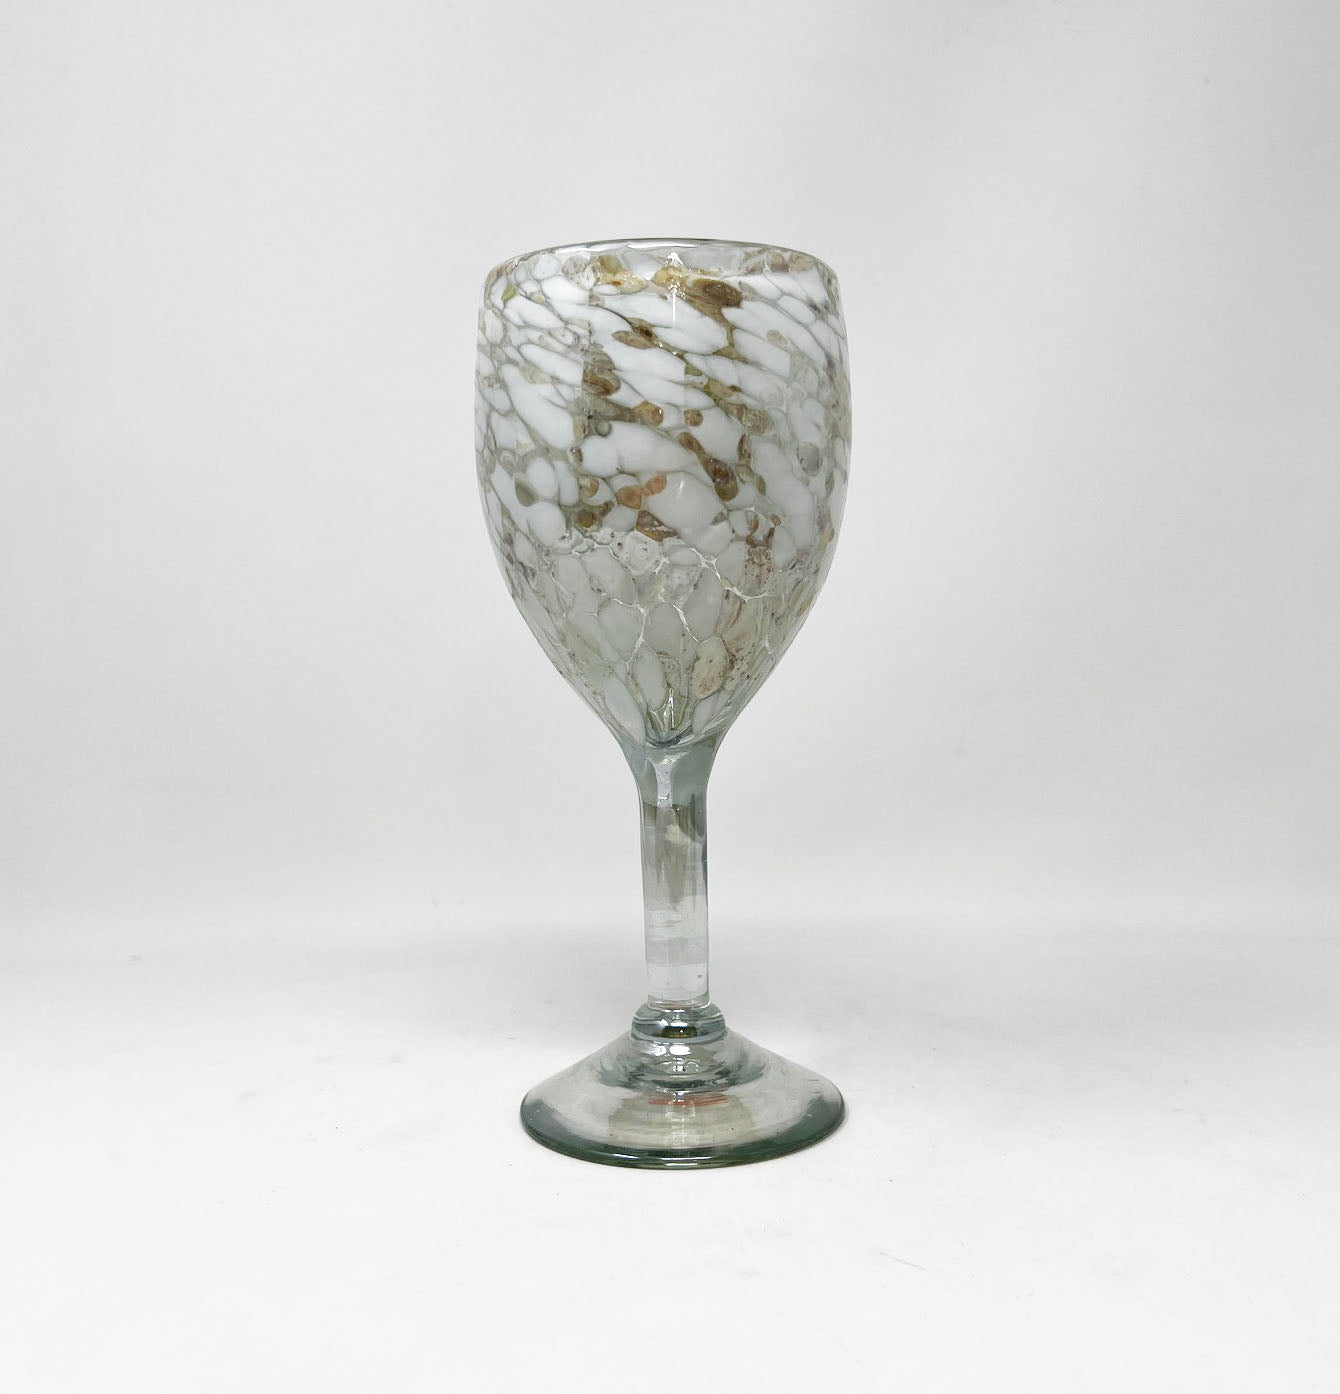 Hand Blown Wine Glass - White / Tan Confetti